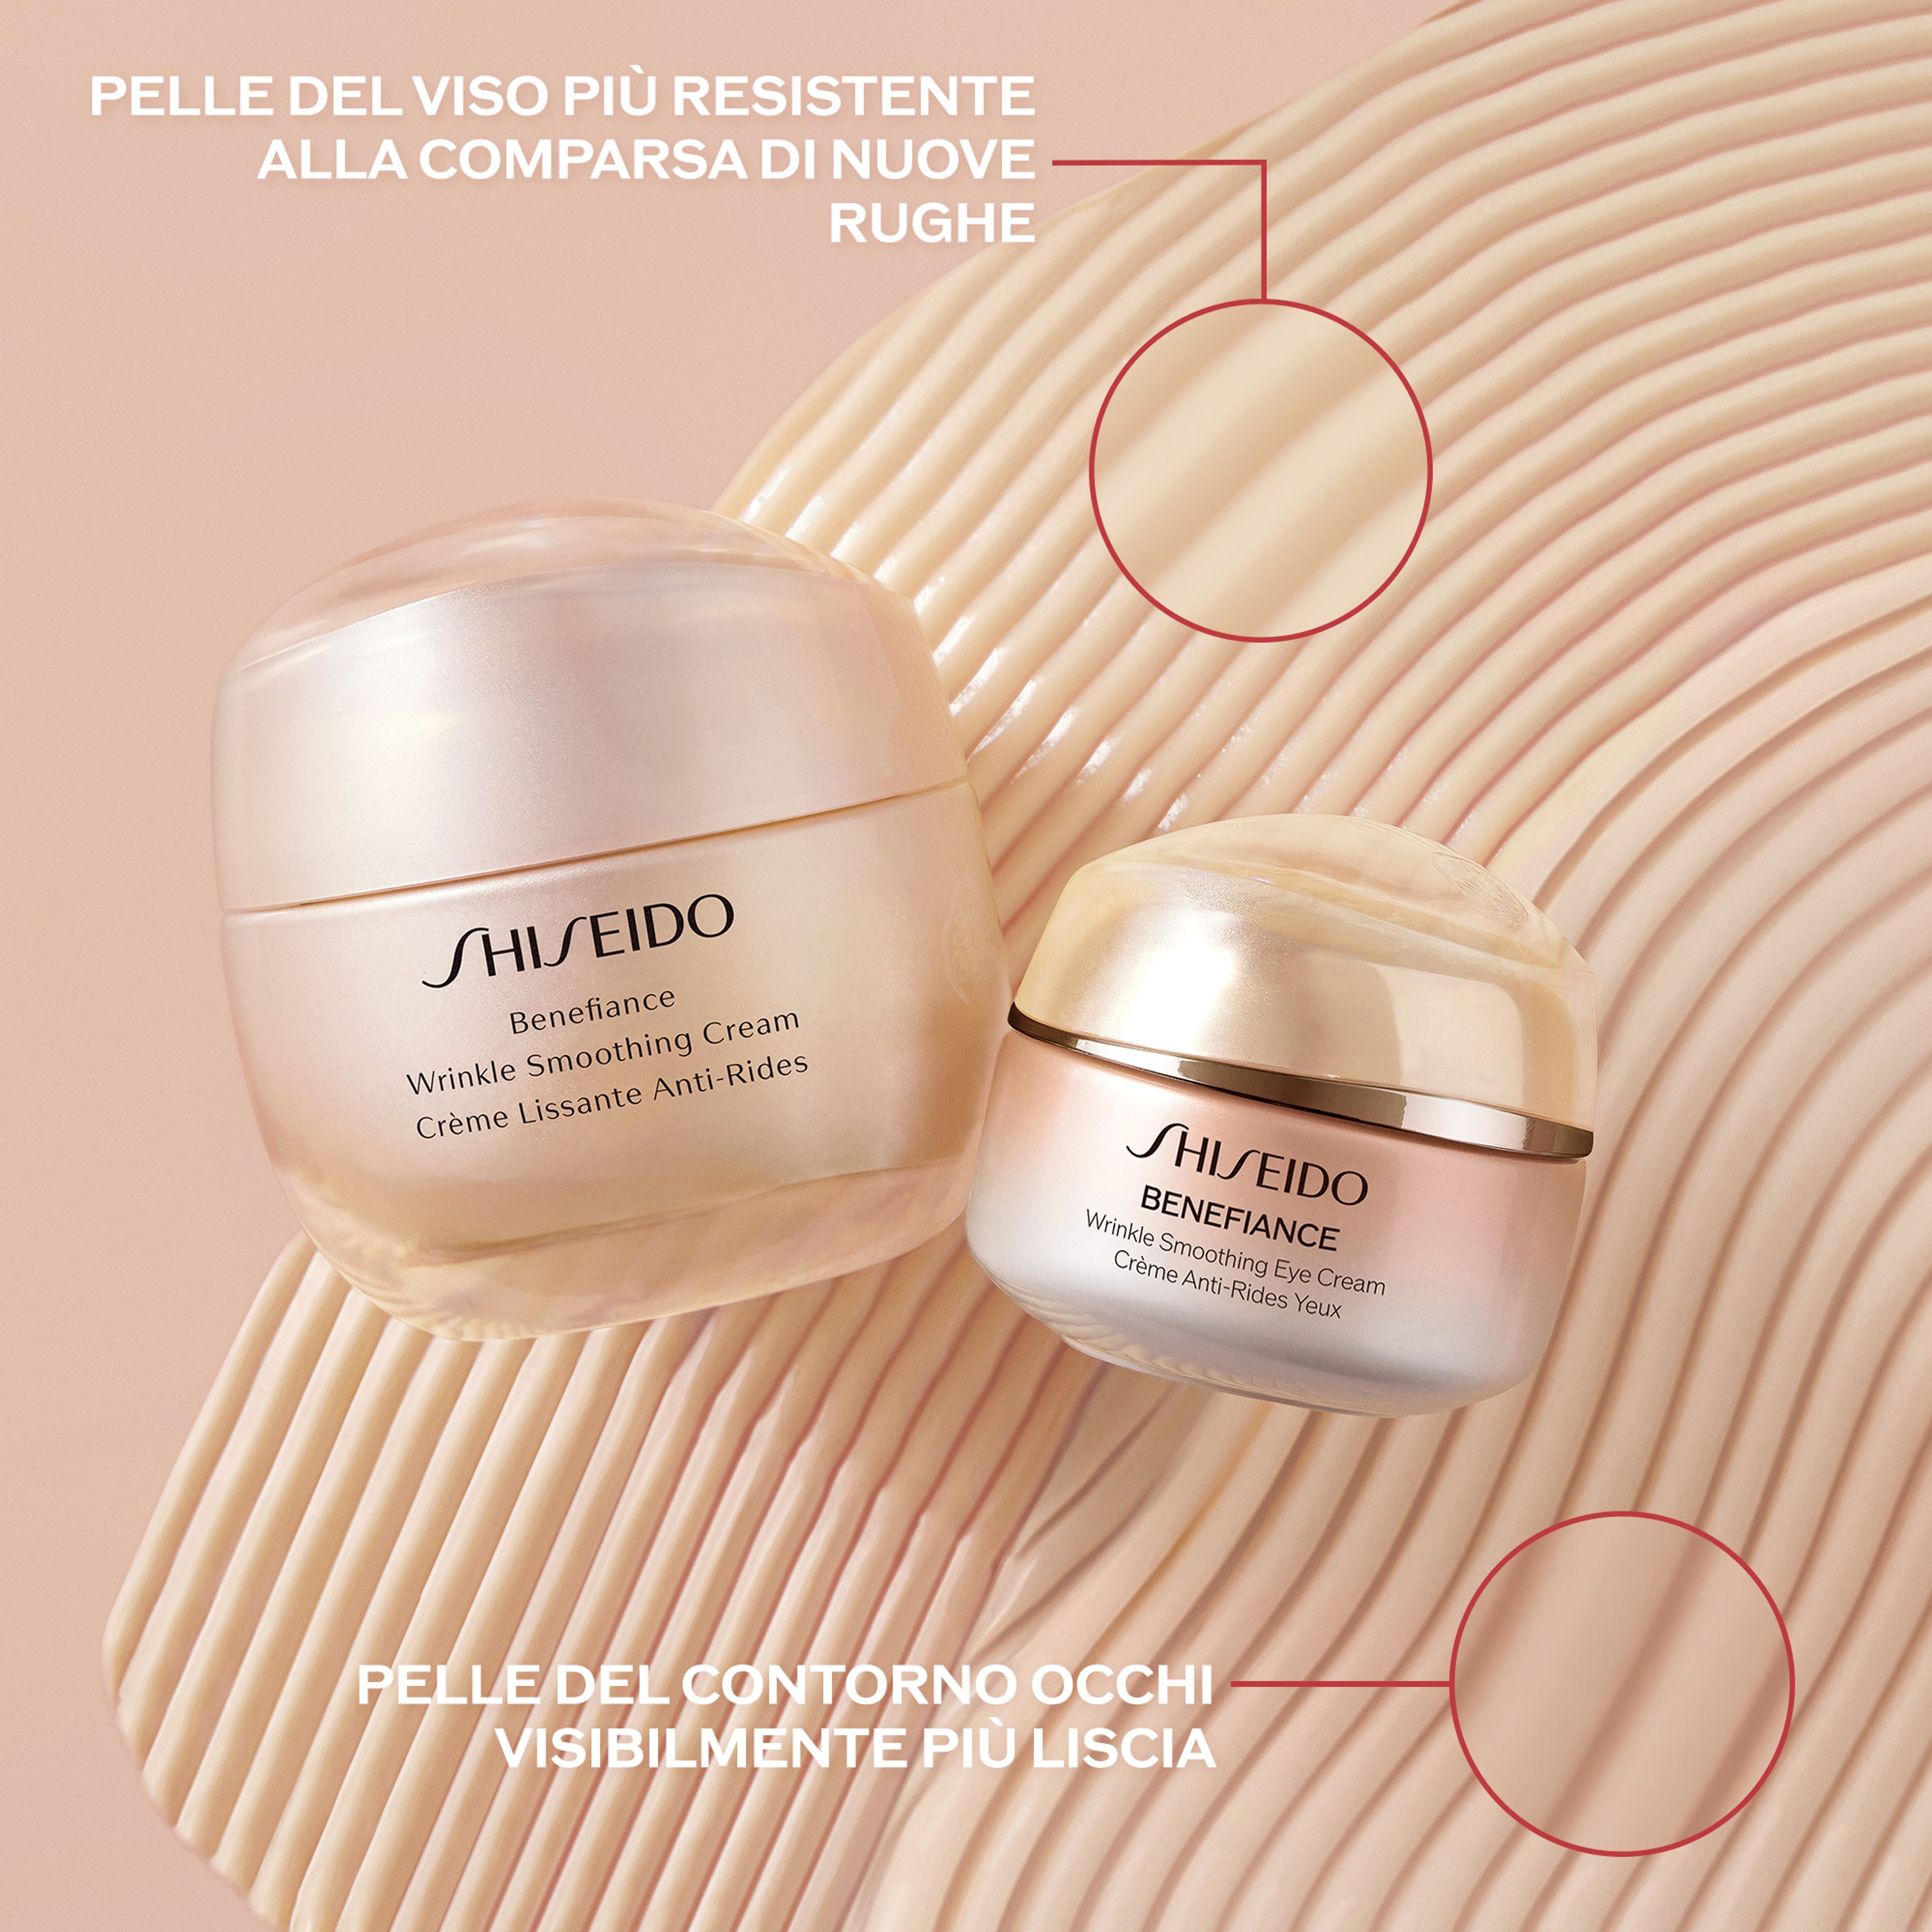 Shiseido Wrinkle Smoothing Eye Cream 5